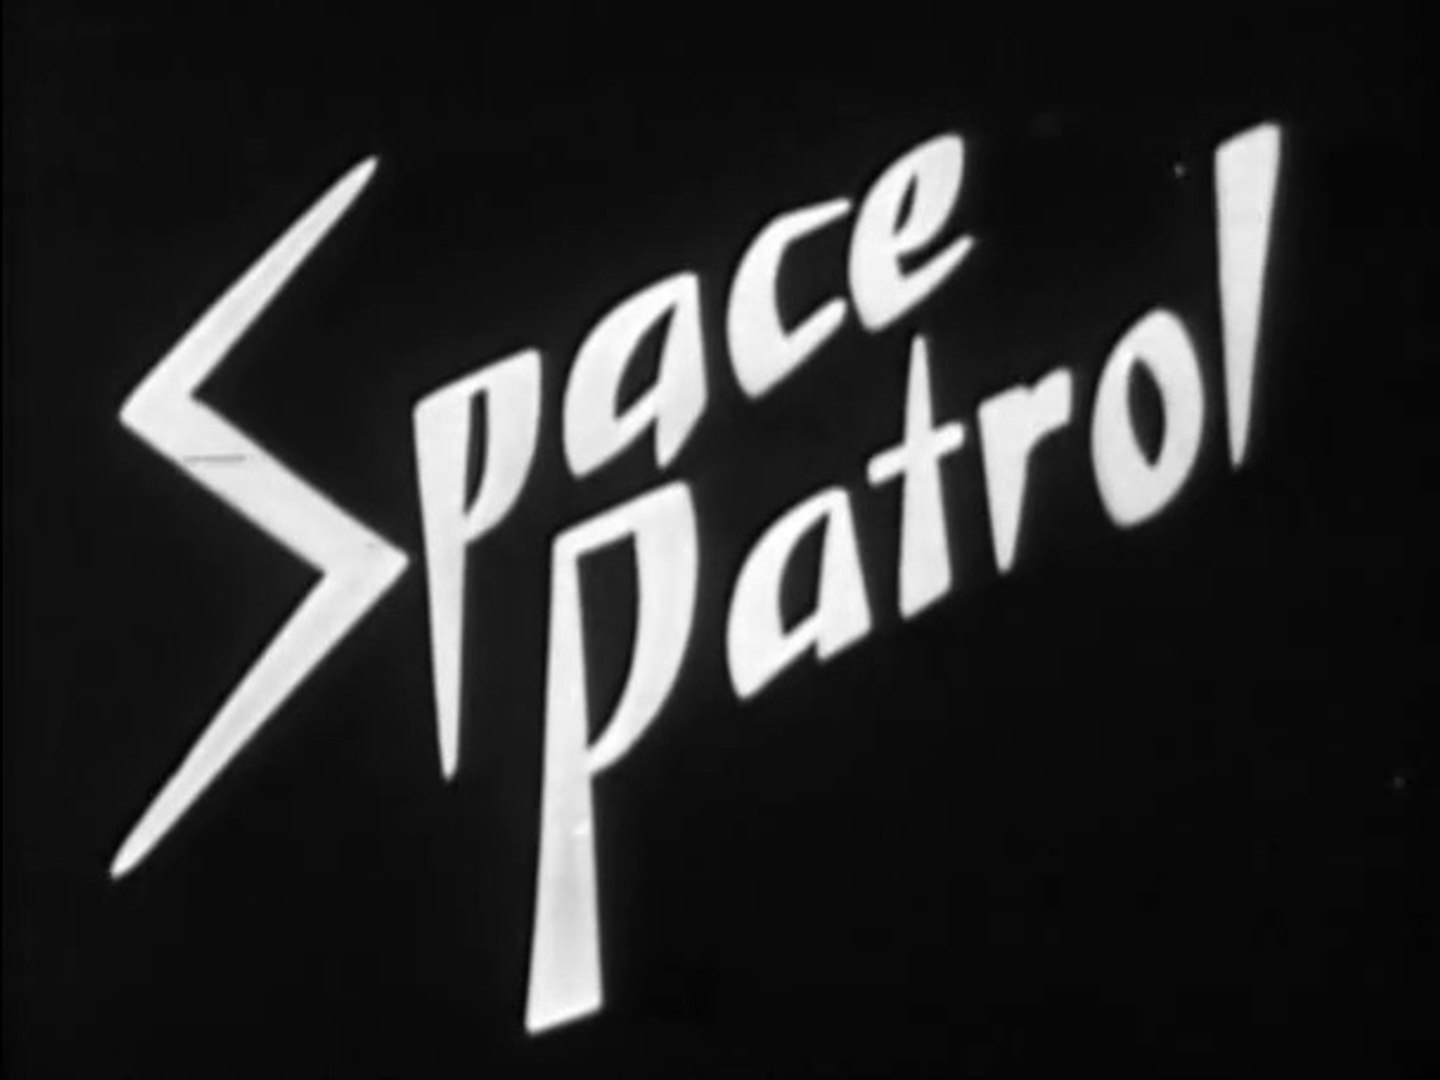 Space Patrol -  Mysterious Ocean in Space (1953)